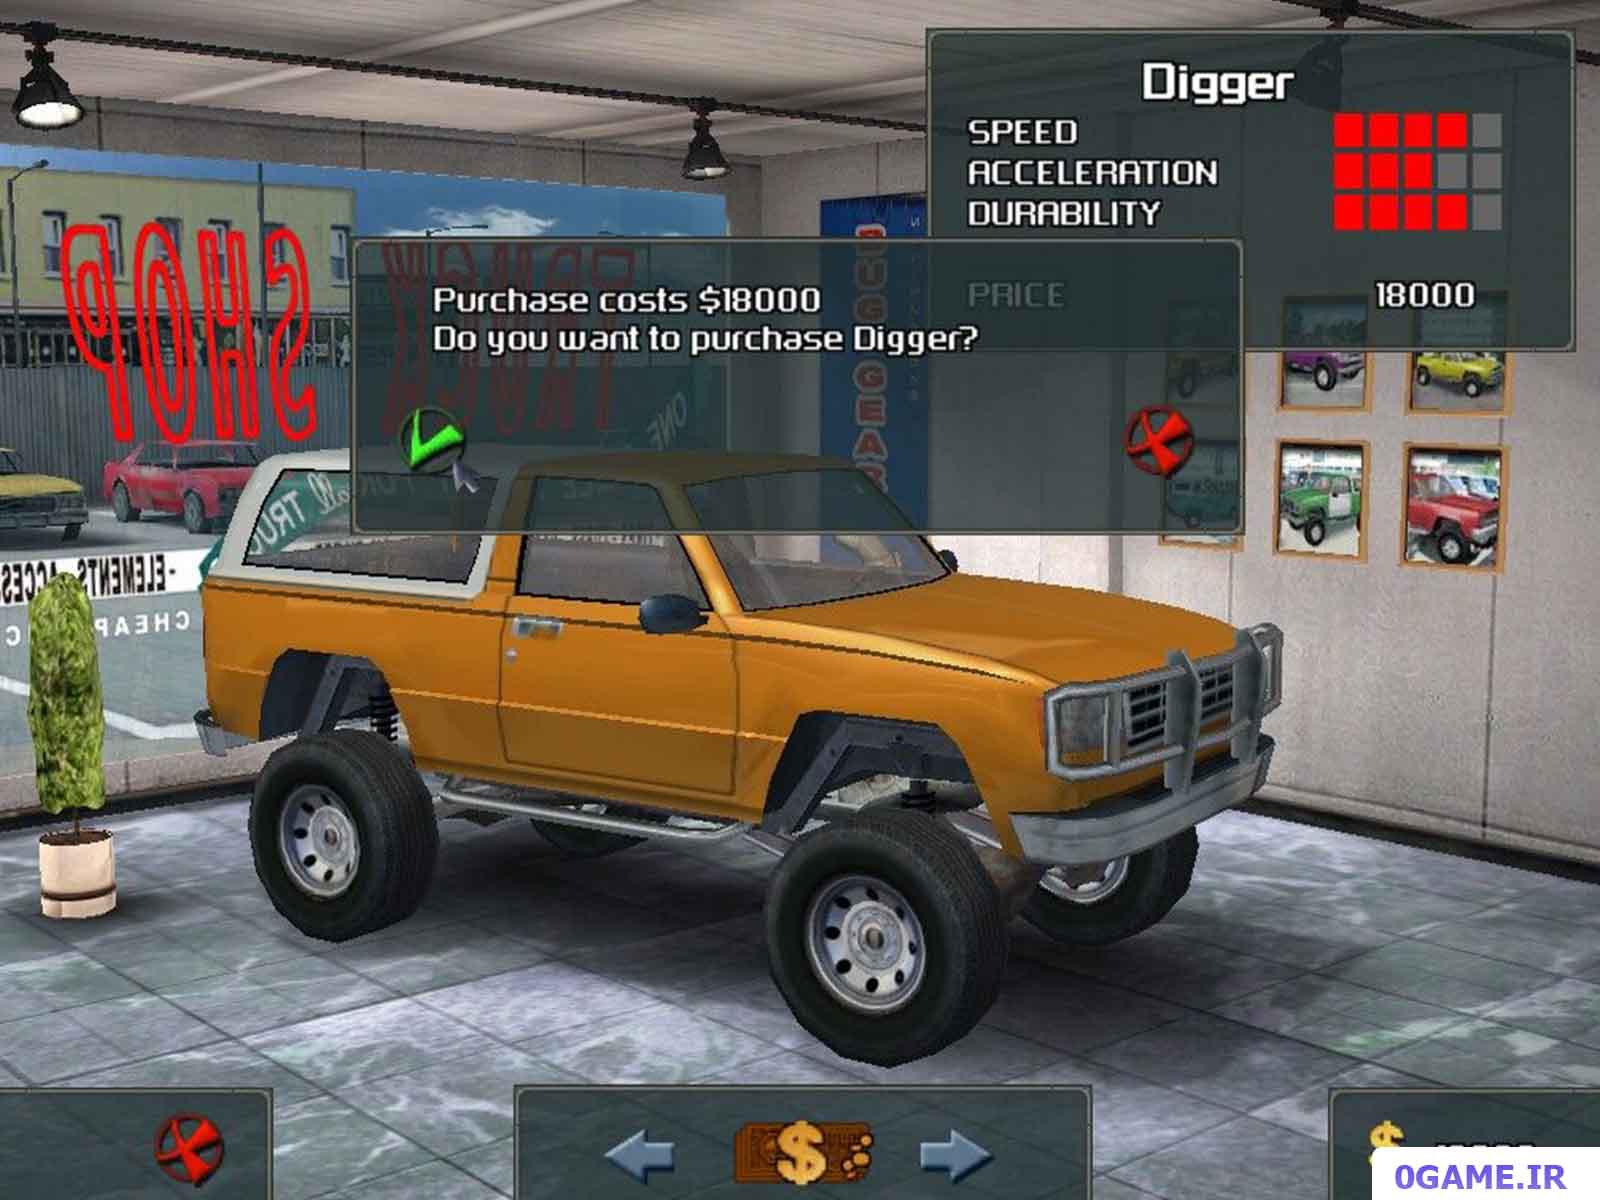 دانلود بازی کامیون های سخت (Tough Trucks: Modified Monsters) نسخه کامل برای کامپیوتر